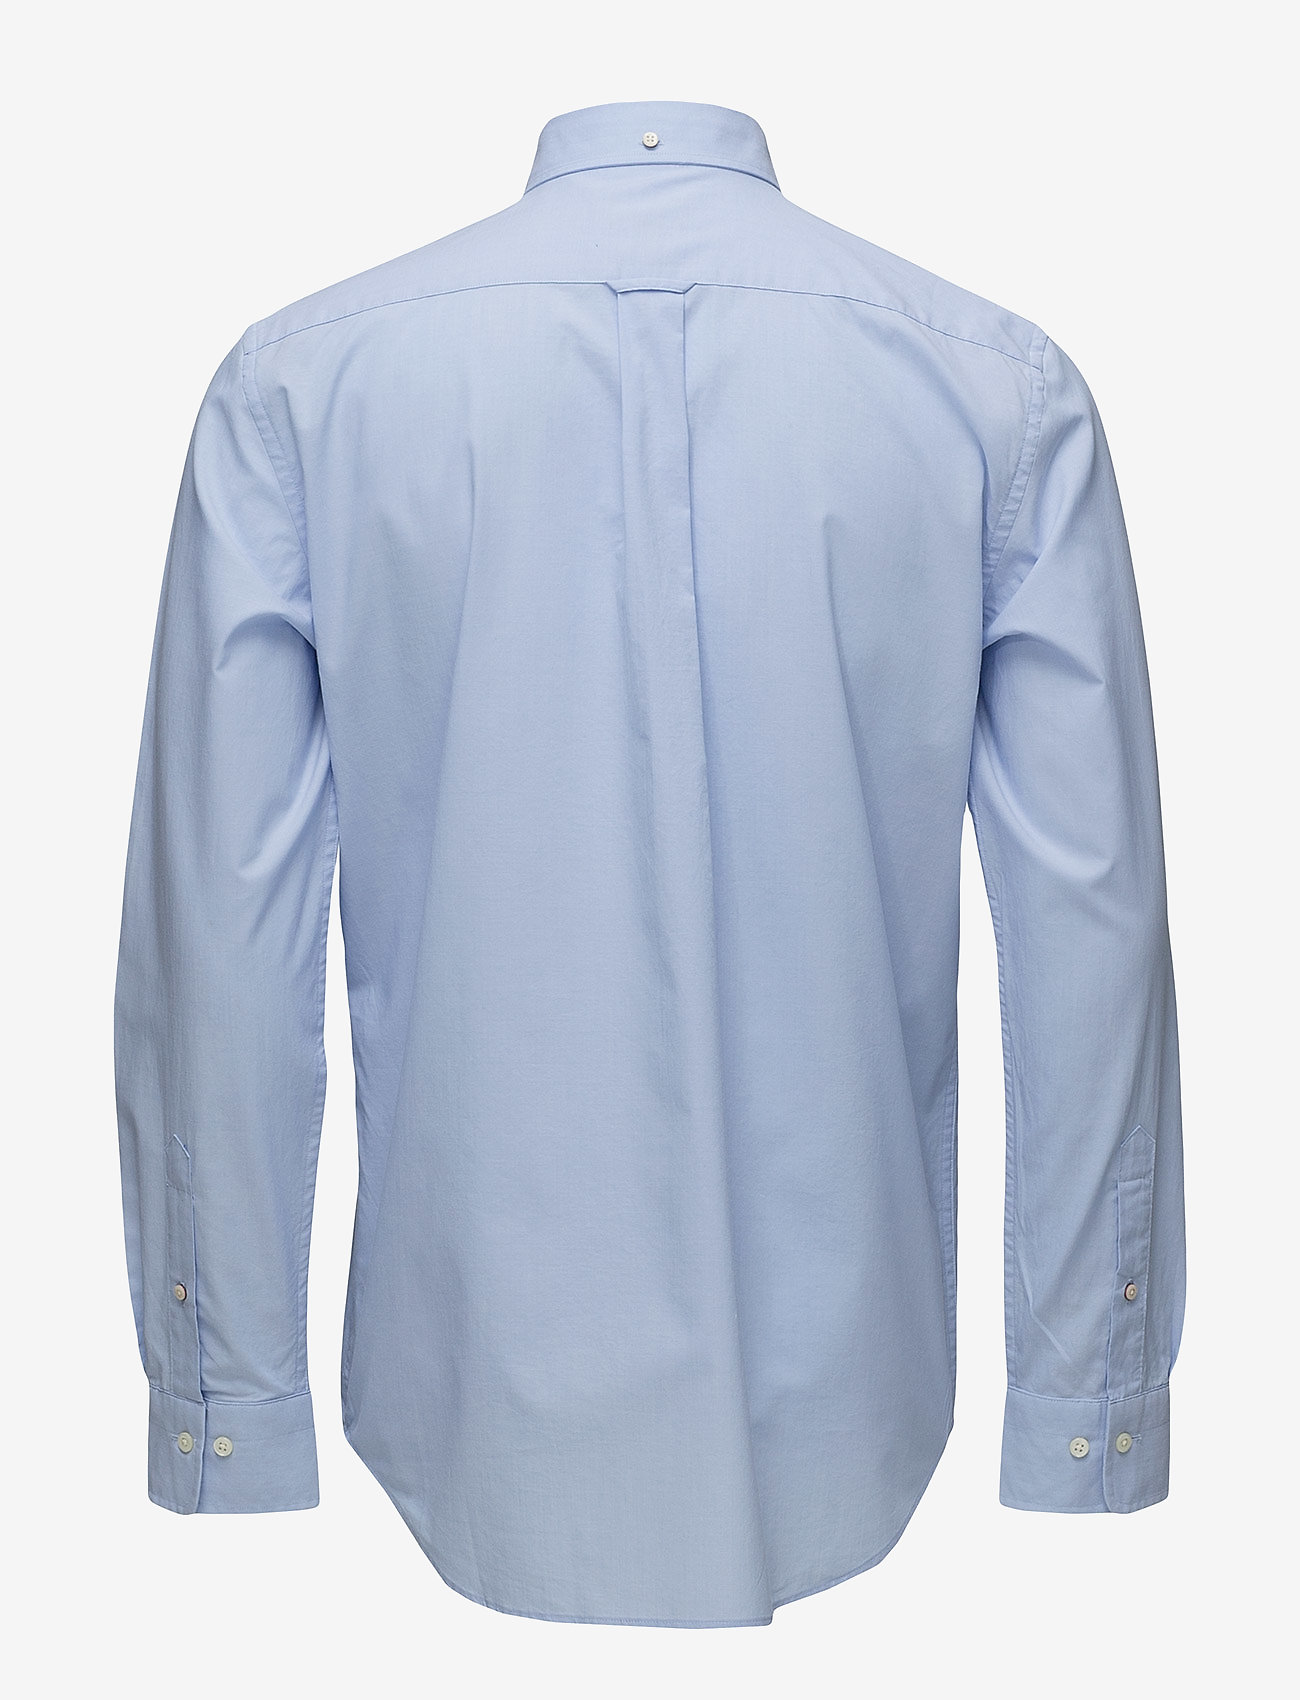 GANT - REG BROADCLOTH BD - oxford-skjortor - muted blue - 1